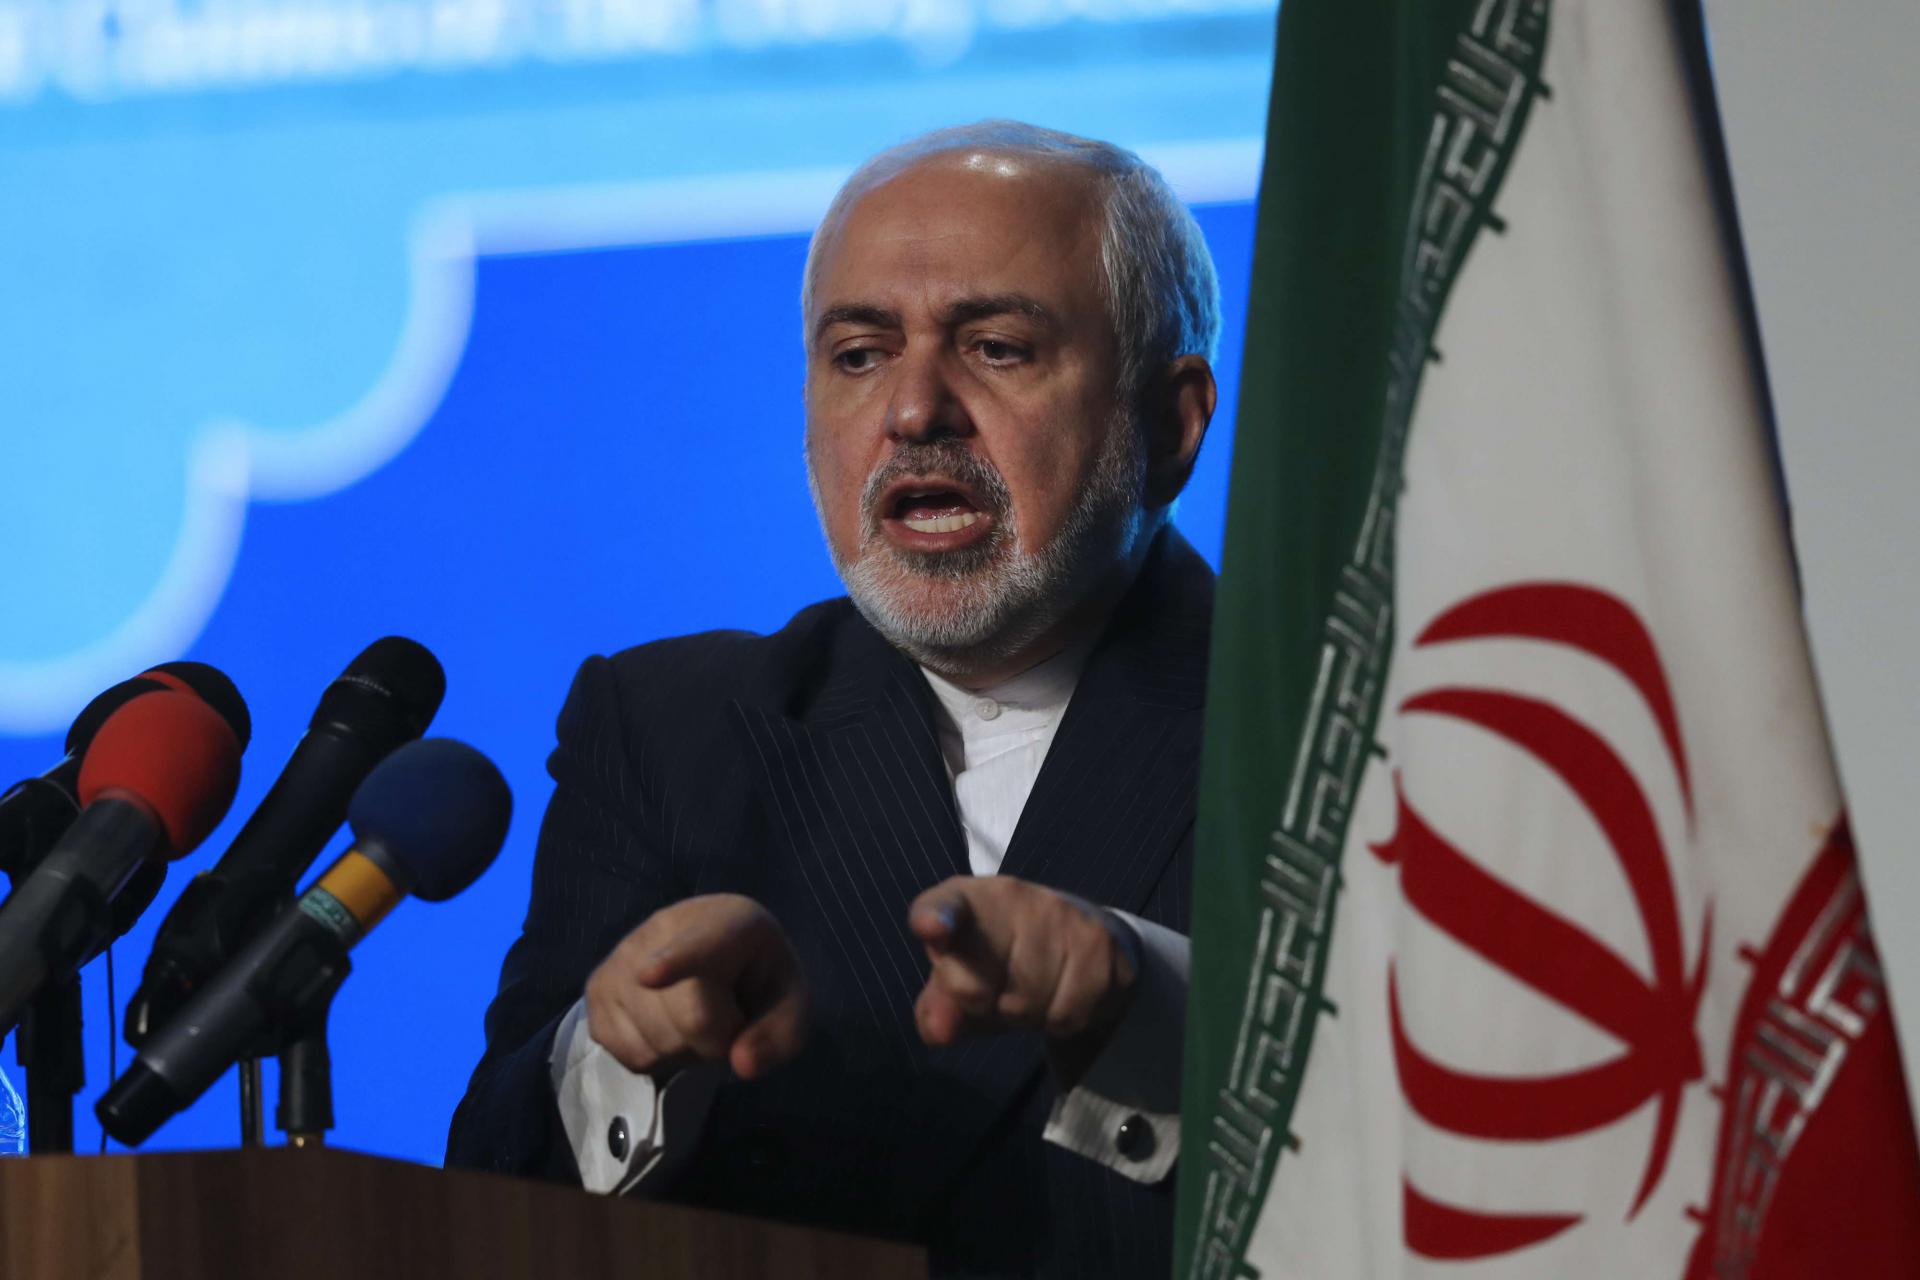 ظريف يرى أنه من غير المنطقي أن تحرم إيران من التصويت بسبب متأخرات مالية "خارجة عن ارادتها"